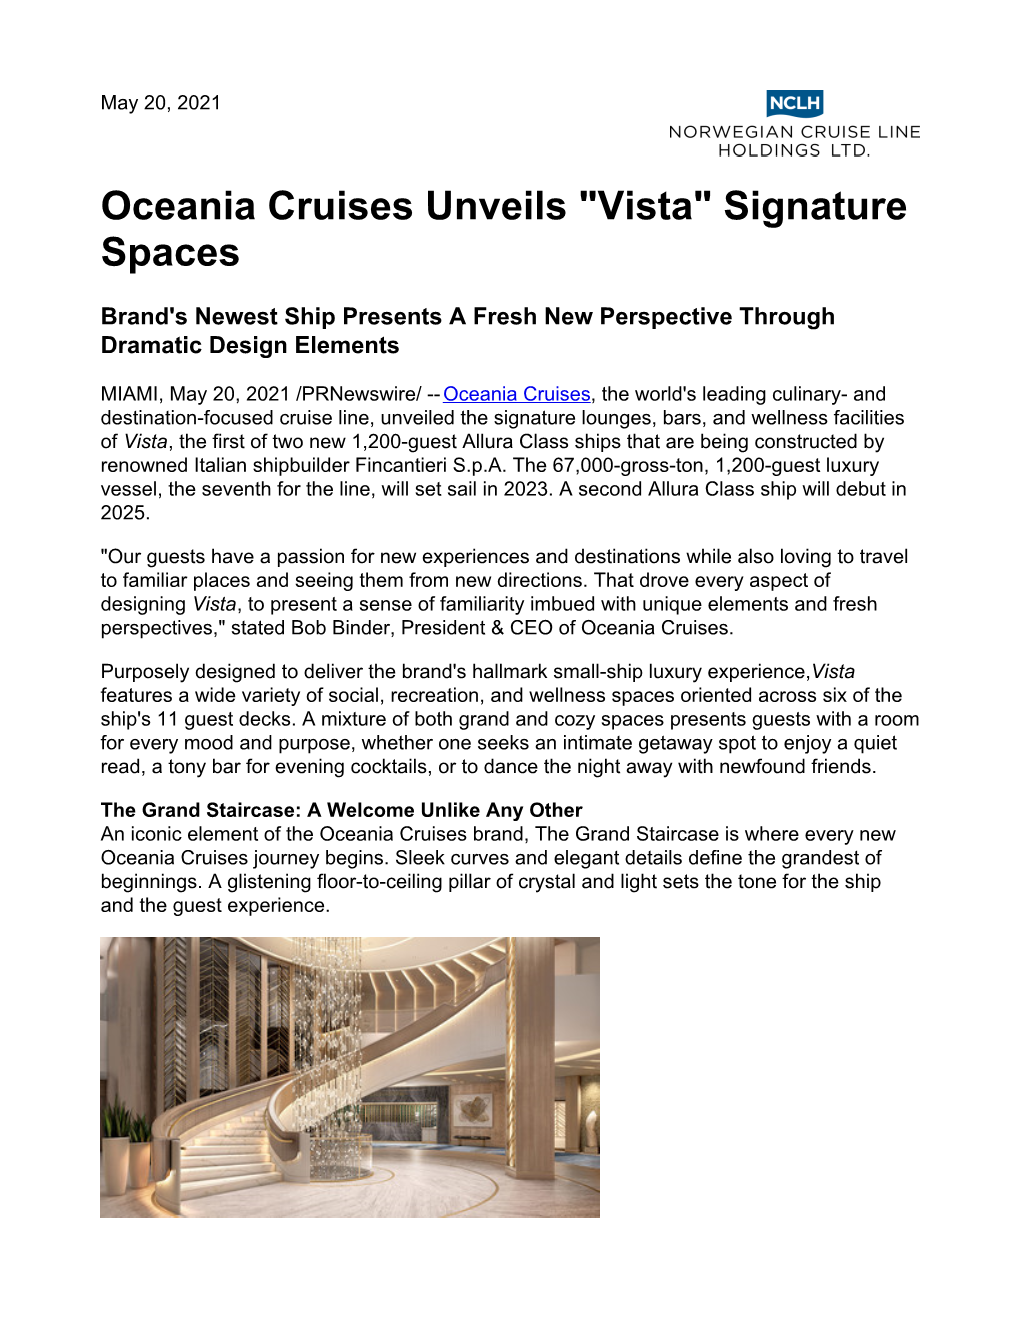 Oceania Cruises Unveils "Vista" Signature Spaces